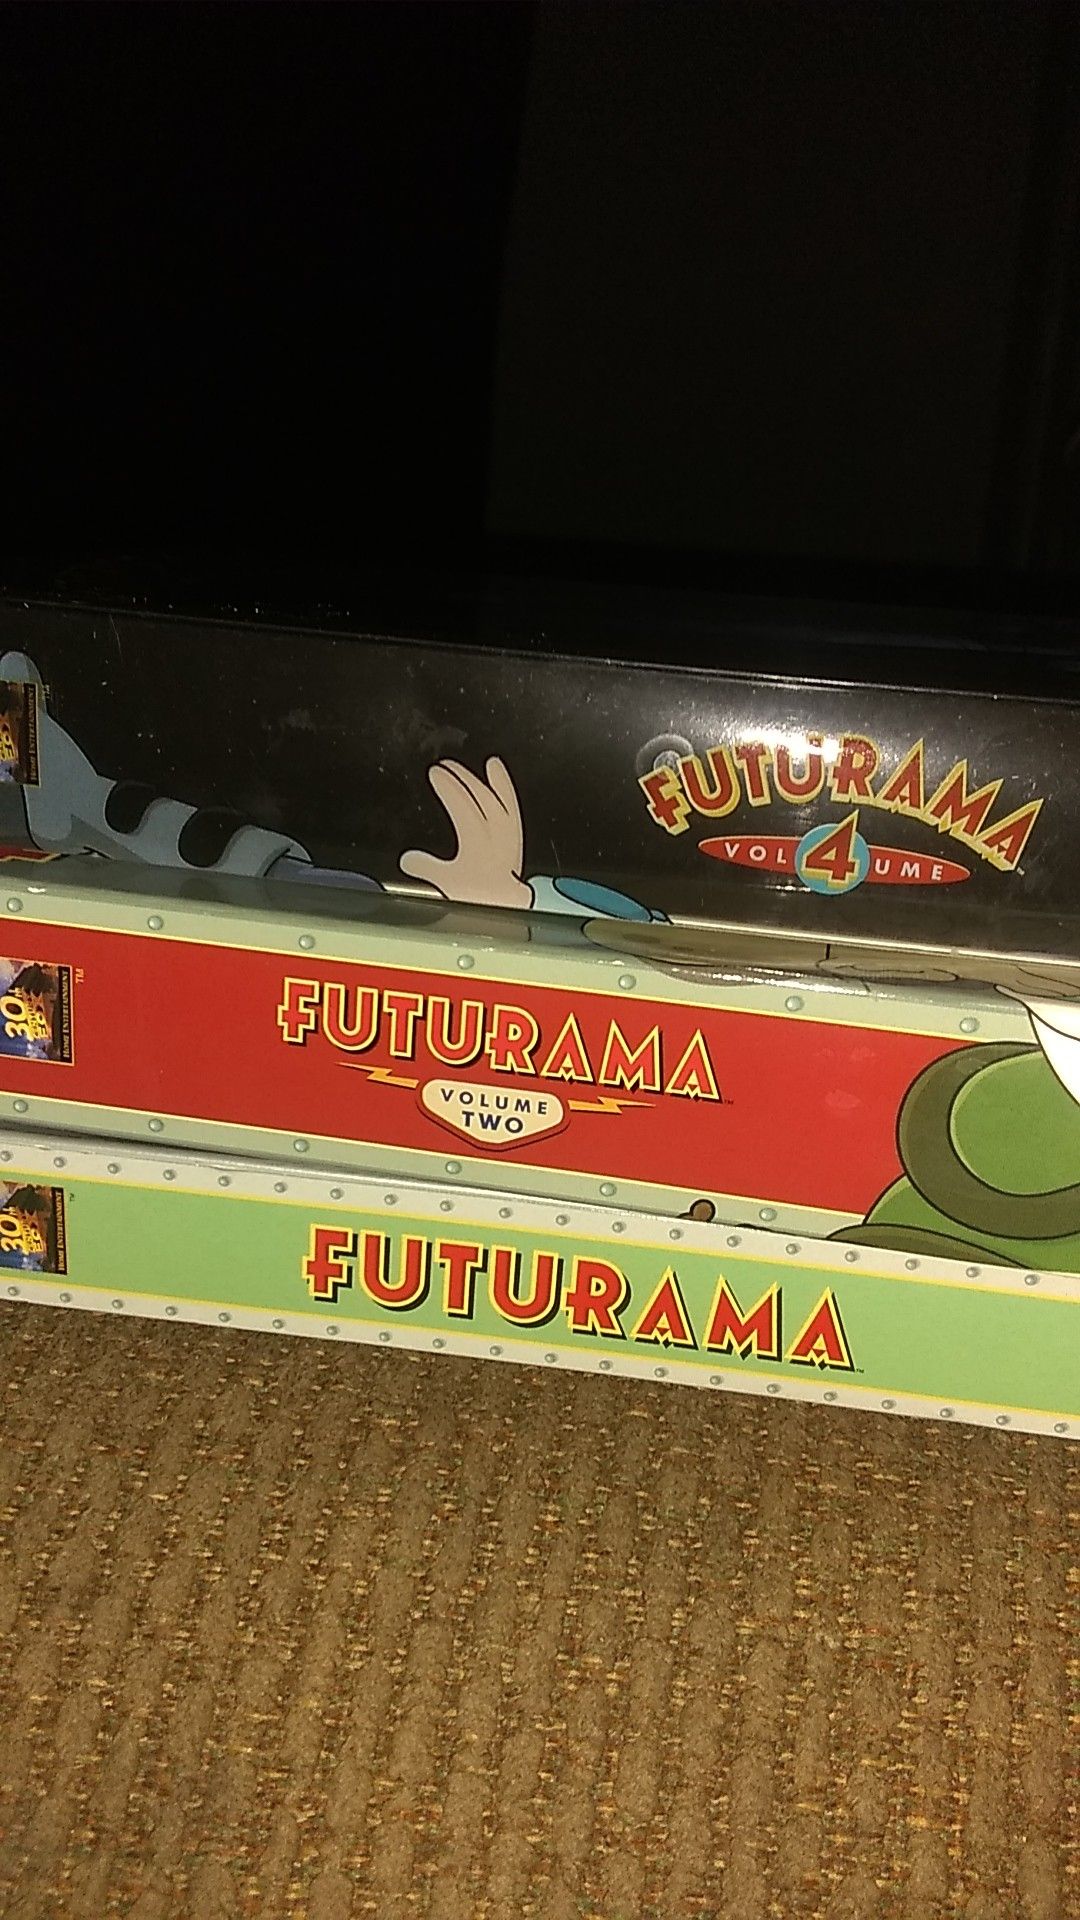 Futurama DVDs - Vol. 1, 2, & 4